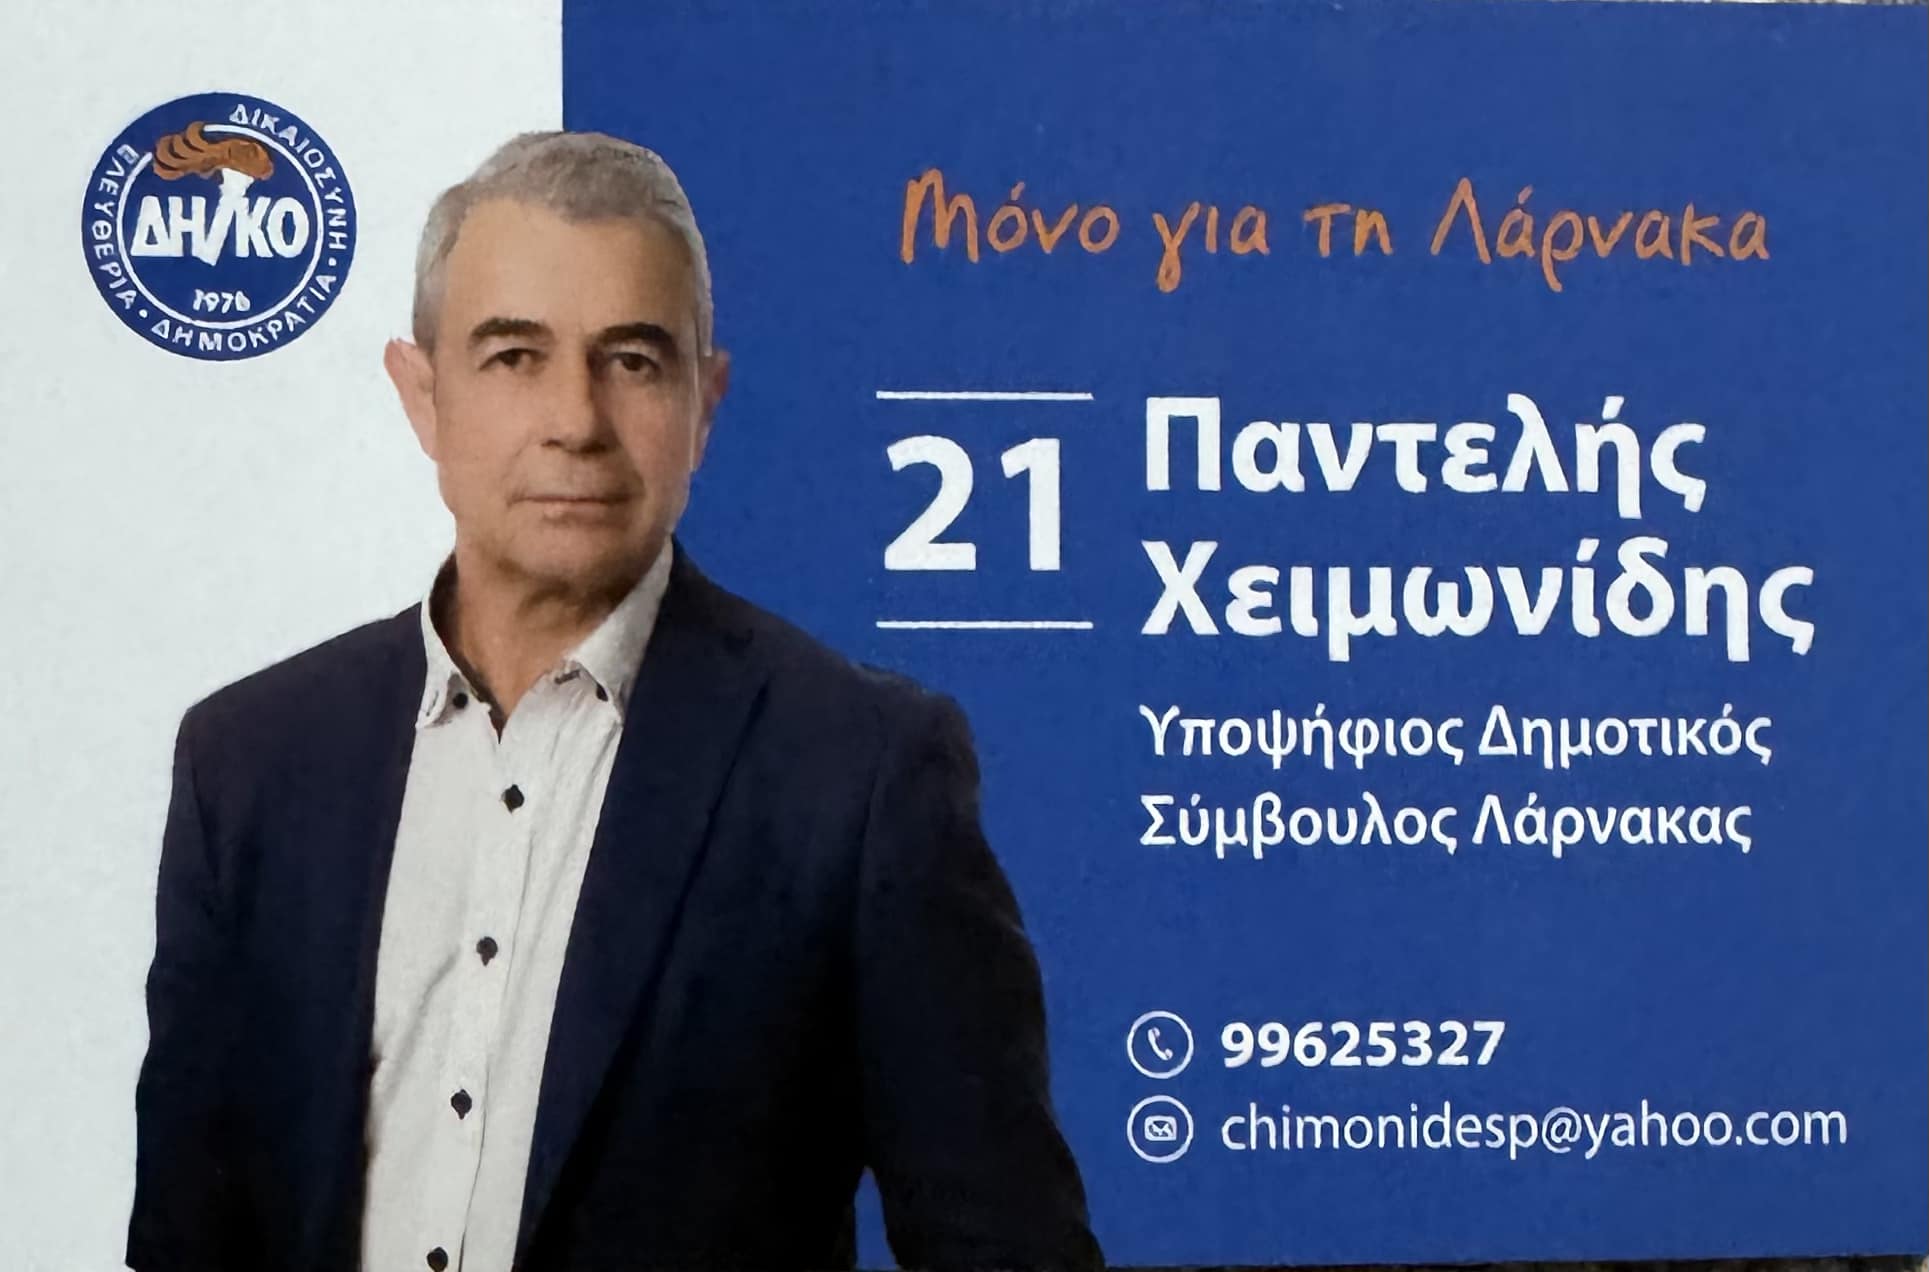 Την υποψηφιότητα του εξήγγειλε ο Παντελής Χειμωνίδης για Δημοτικός Σύμβουλος Λάρνακας